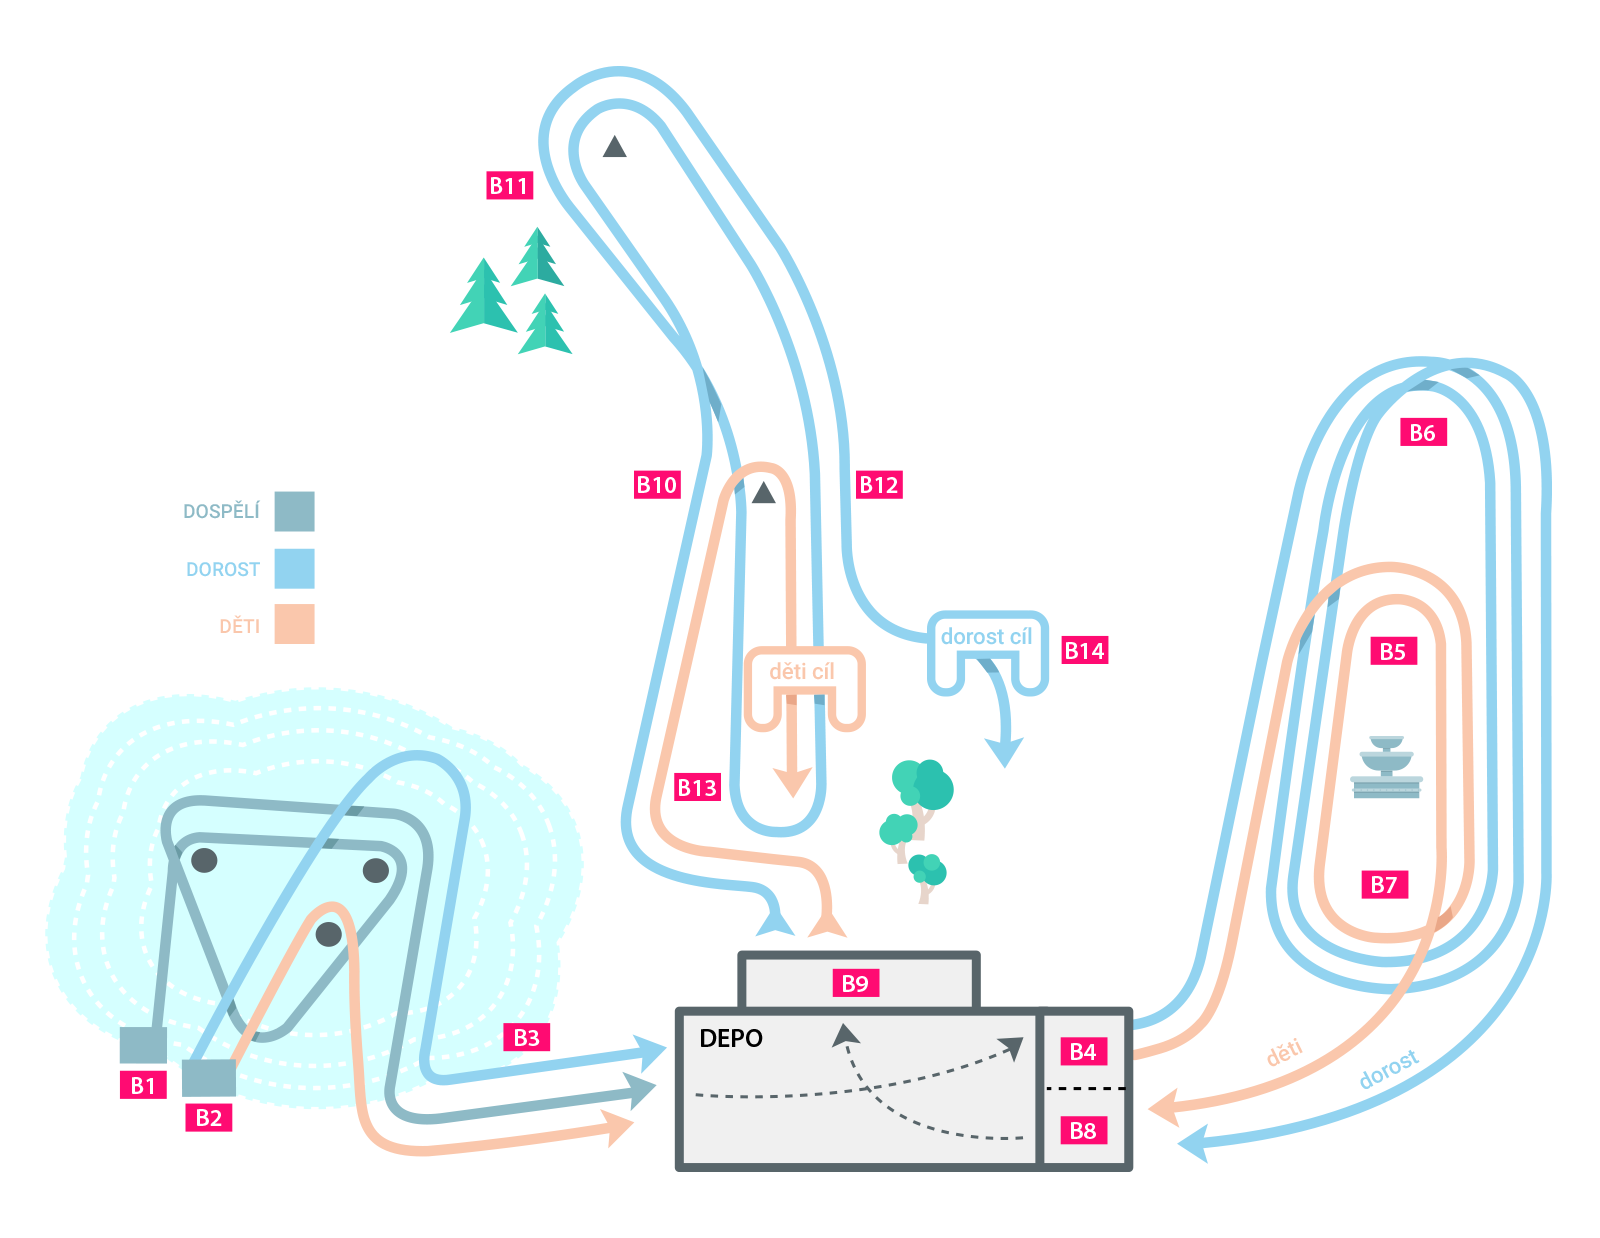 Ilustrativní model velmi složitého závodního dne Pro ilustraci byl vytvořen relativně složitý model závodního dne.